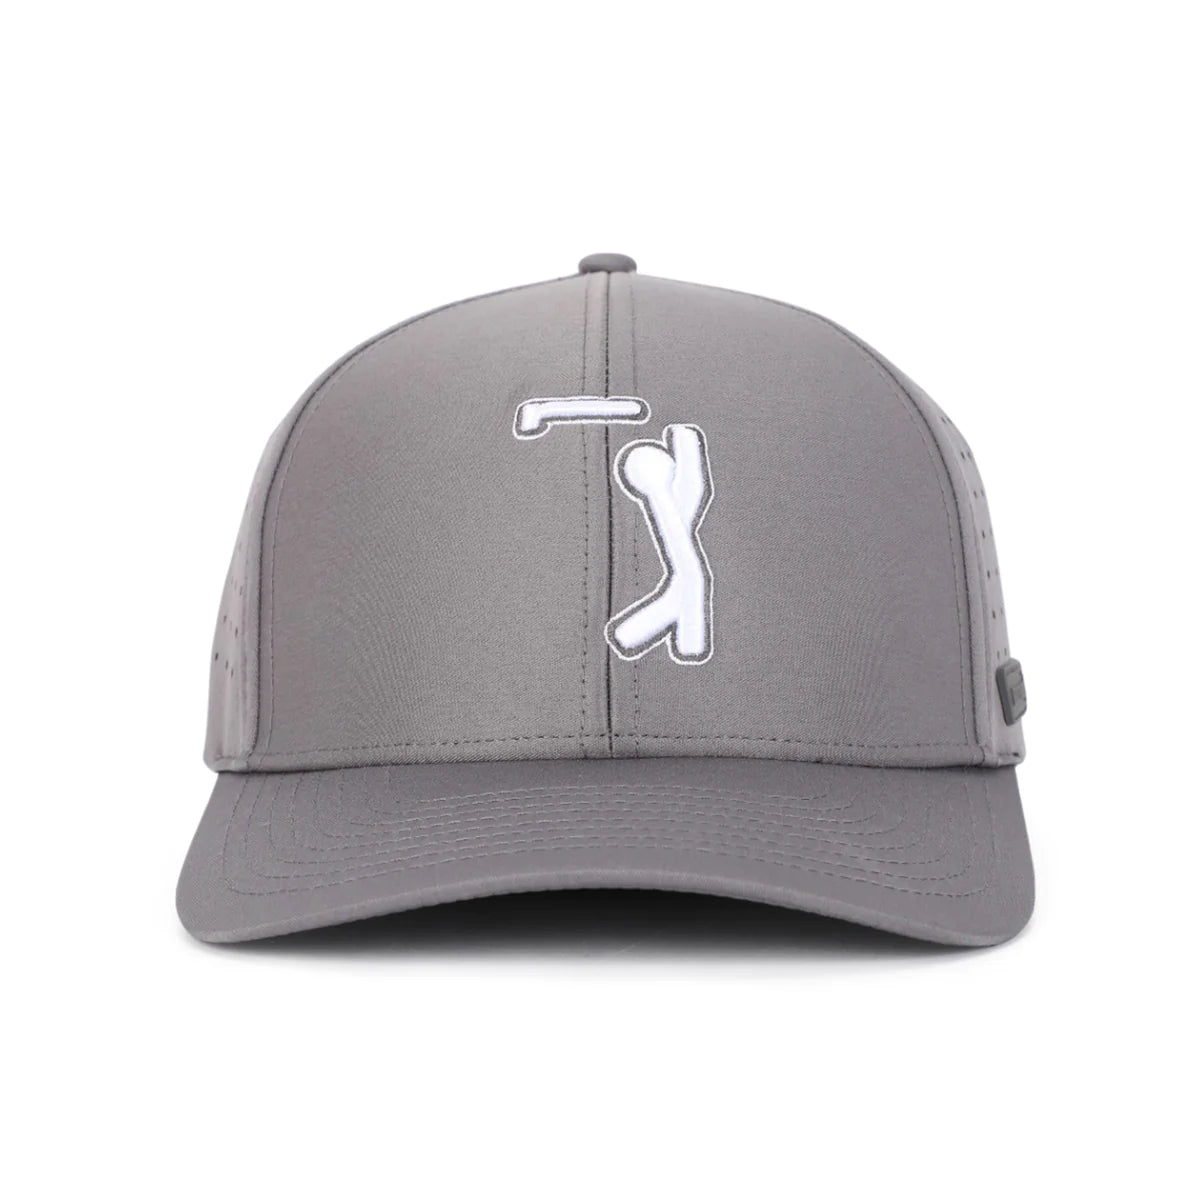 Bogeyman Dark Grey- Performance Golf Hat- Stretch Fit